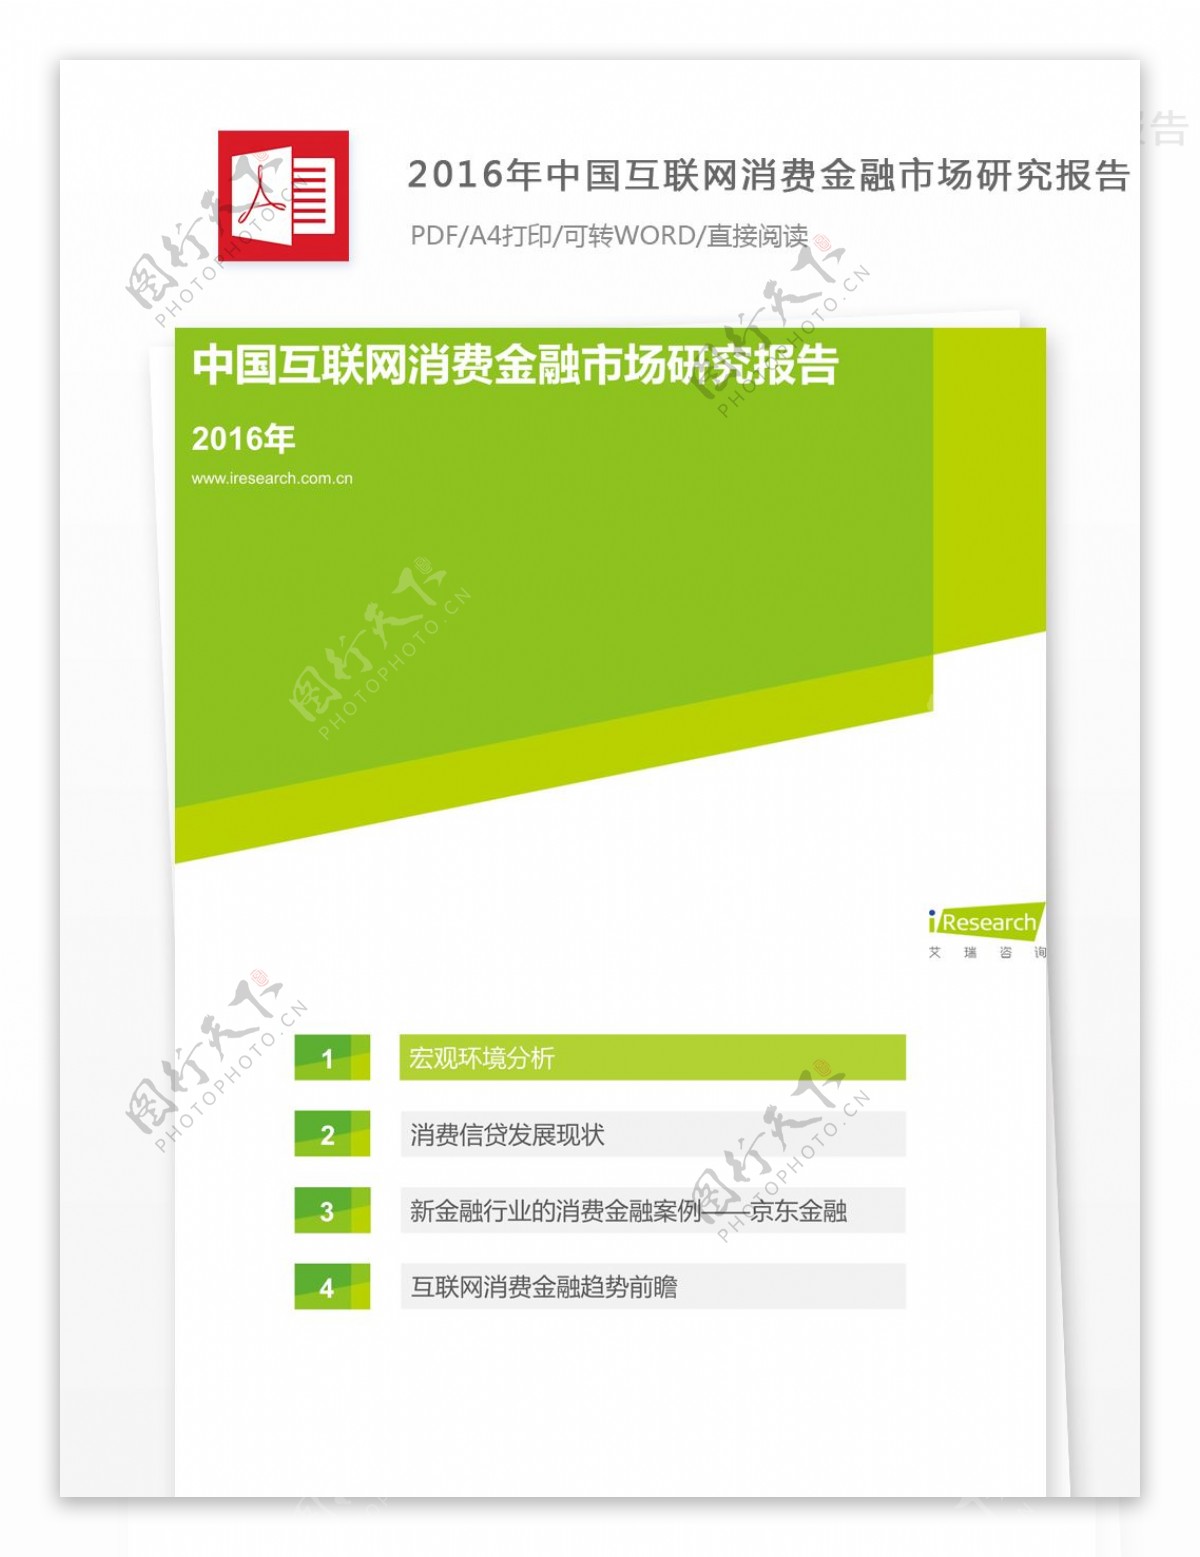 中国互联网消费金融市场研究报告的格式